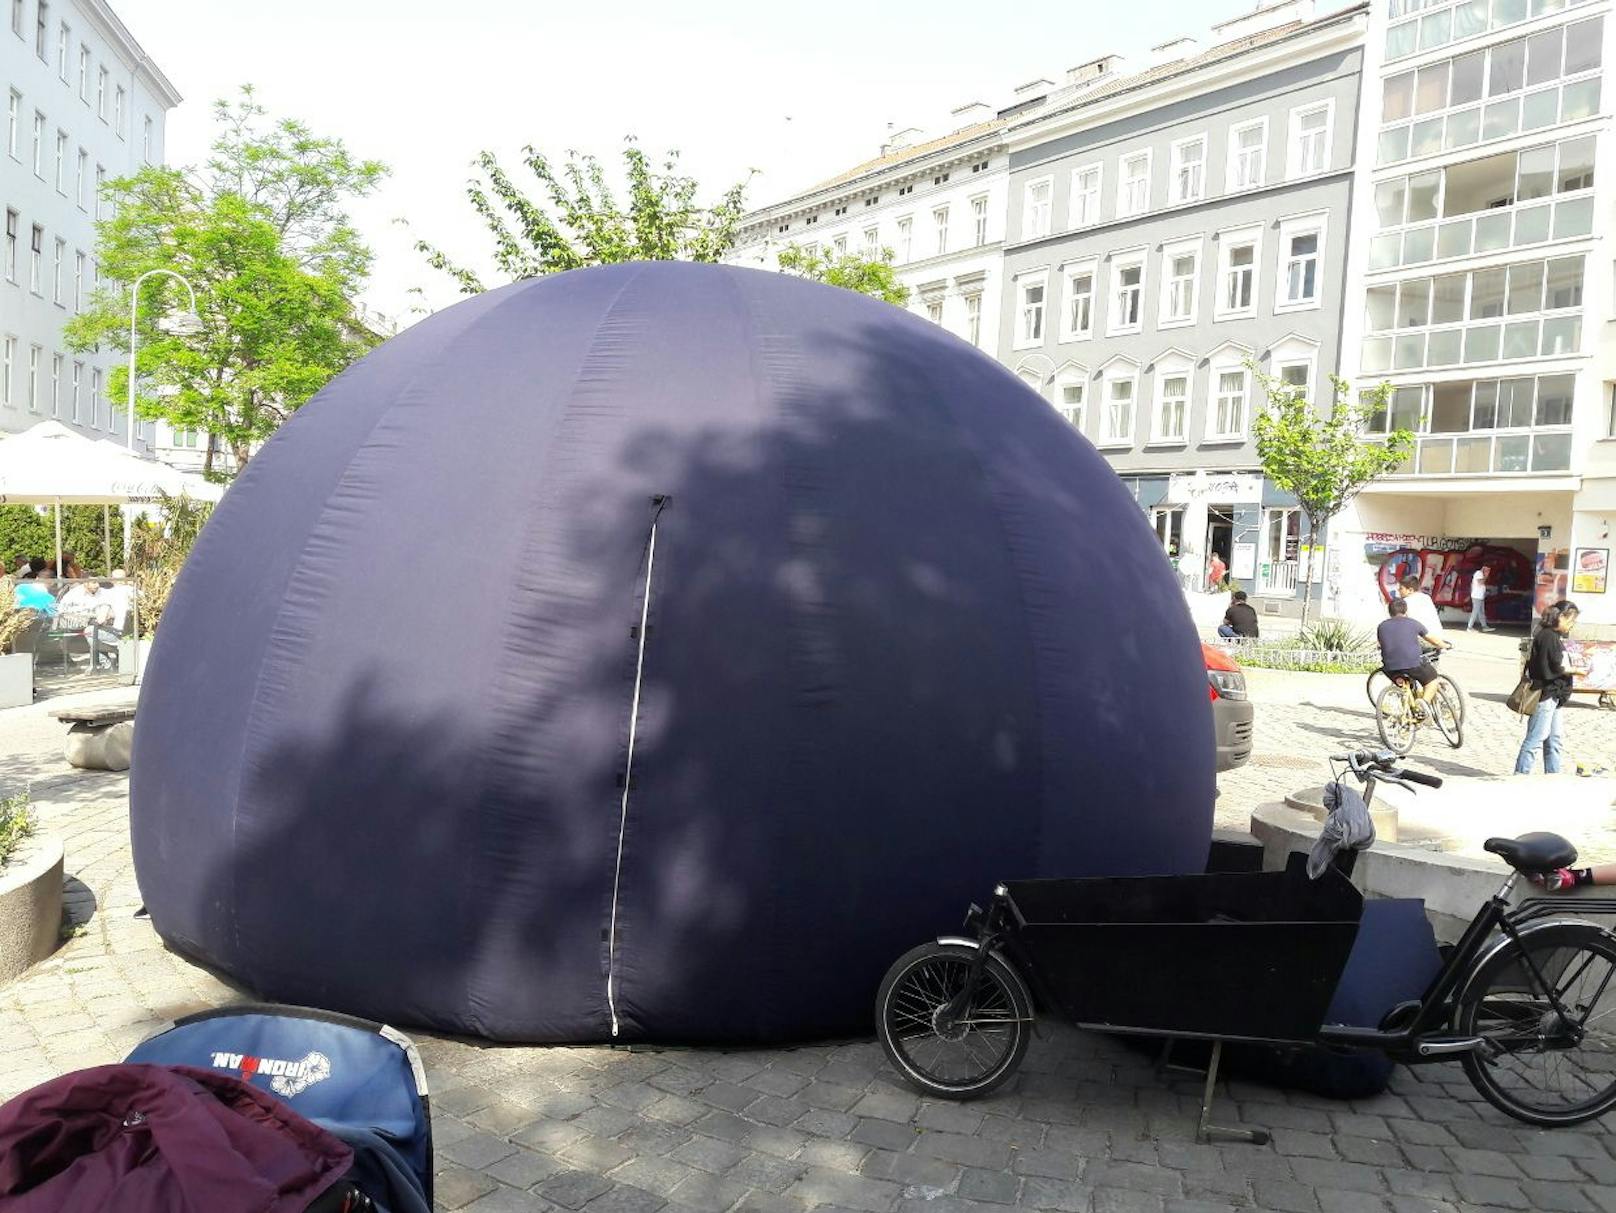 Ihre "Planetarium to go" ist aufblasbar und passt auf ihr Lastenrad.